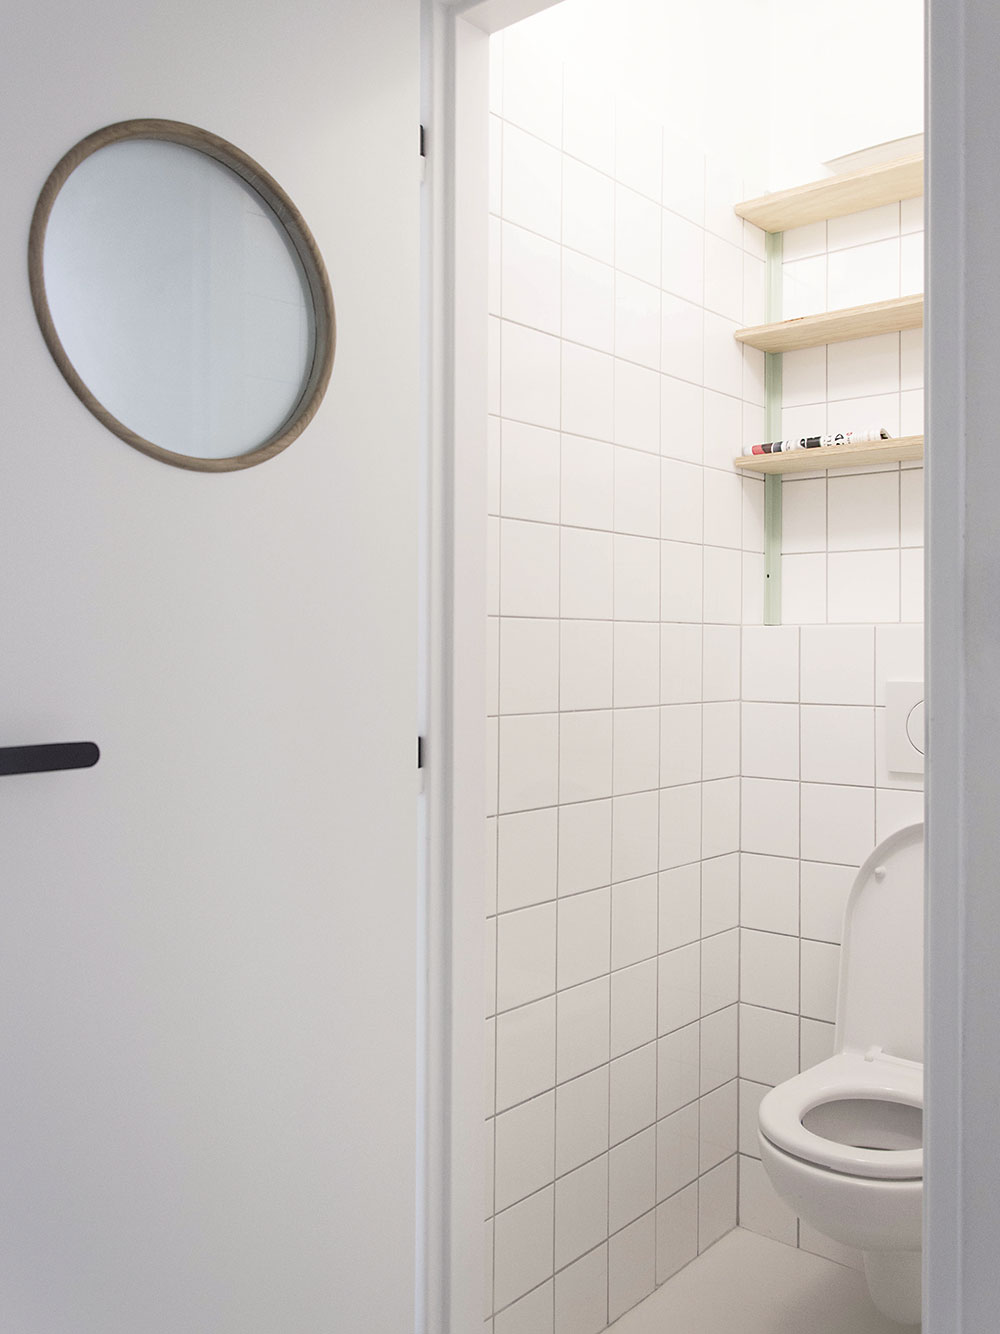 Toaletu a koupelnu charakterizuje jednoduchý bílý obklad. Menší čtvercový formát působí moderně a současně retro. FOTO SCHWESTERN